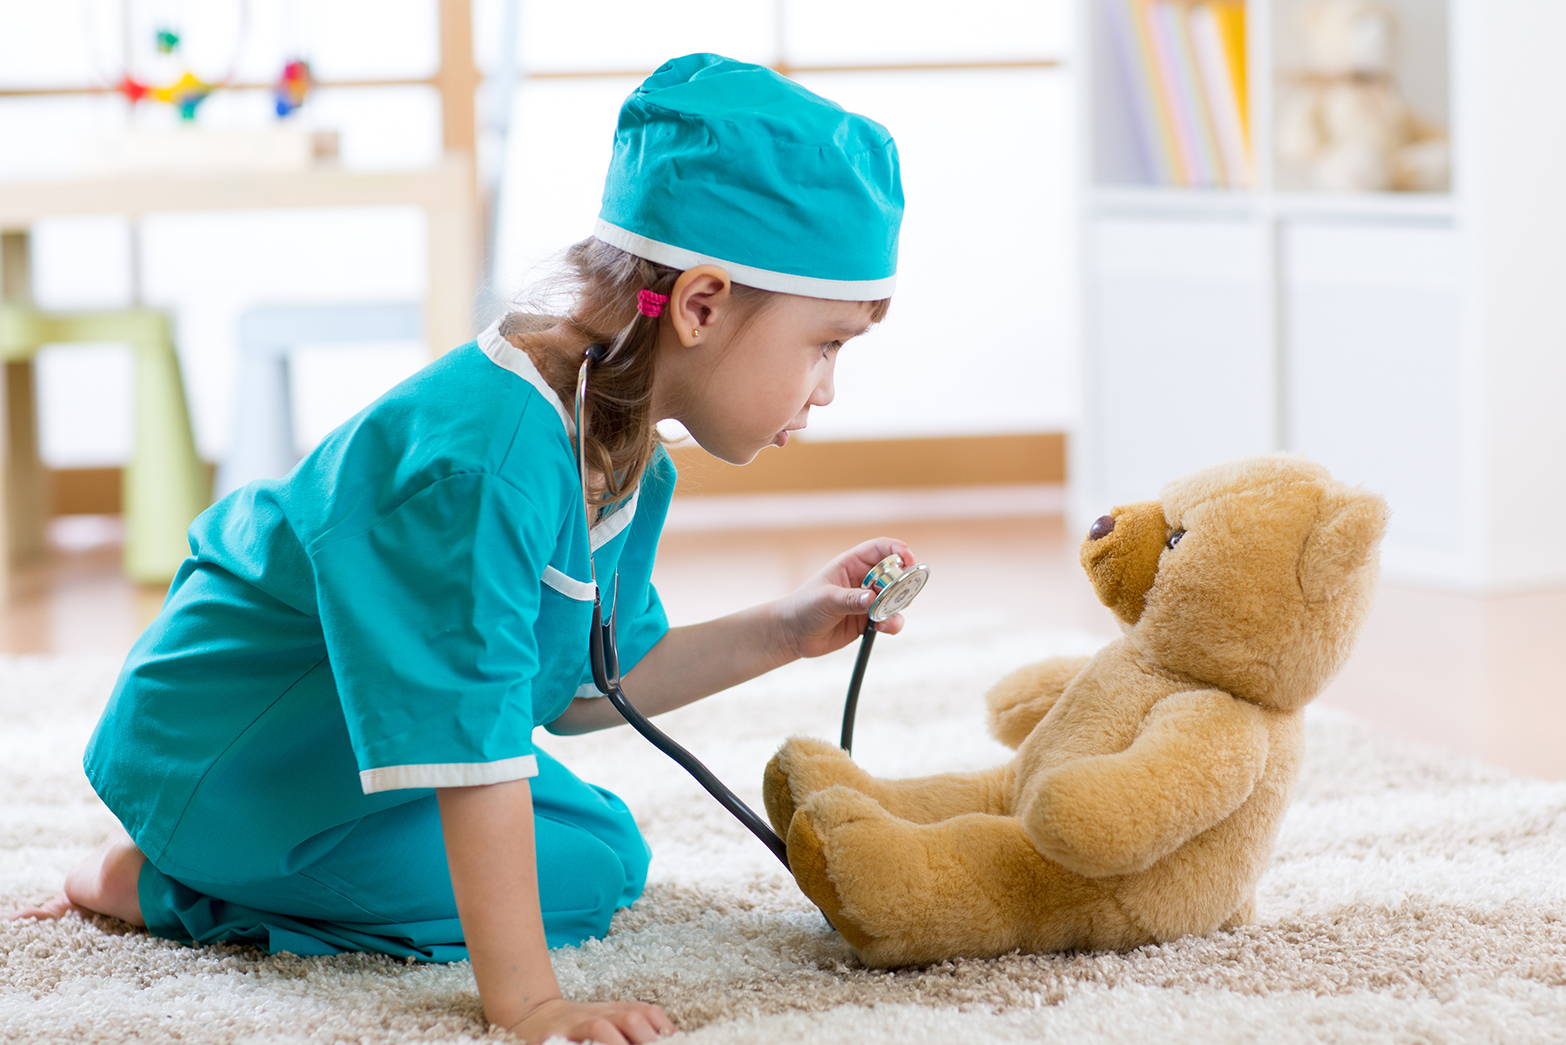 Kind im Arztkittel untersucht einen Teddy mit einem Stethoskop.